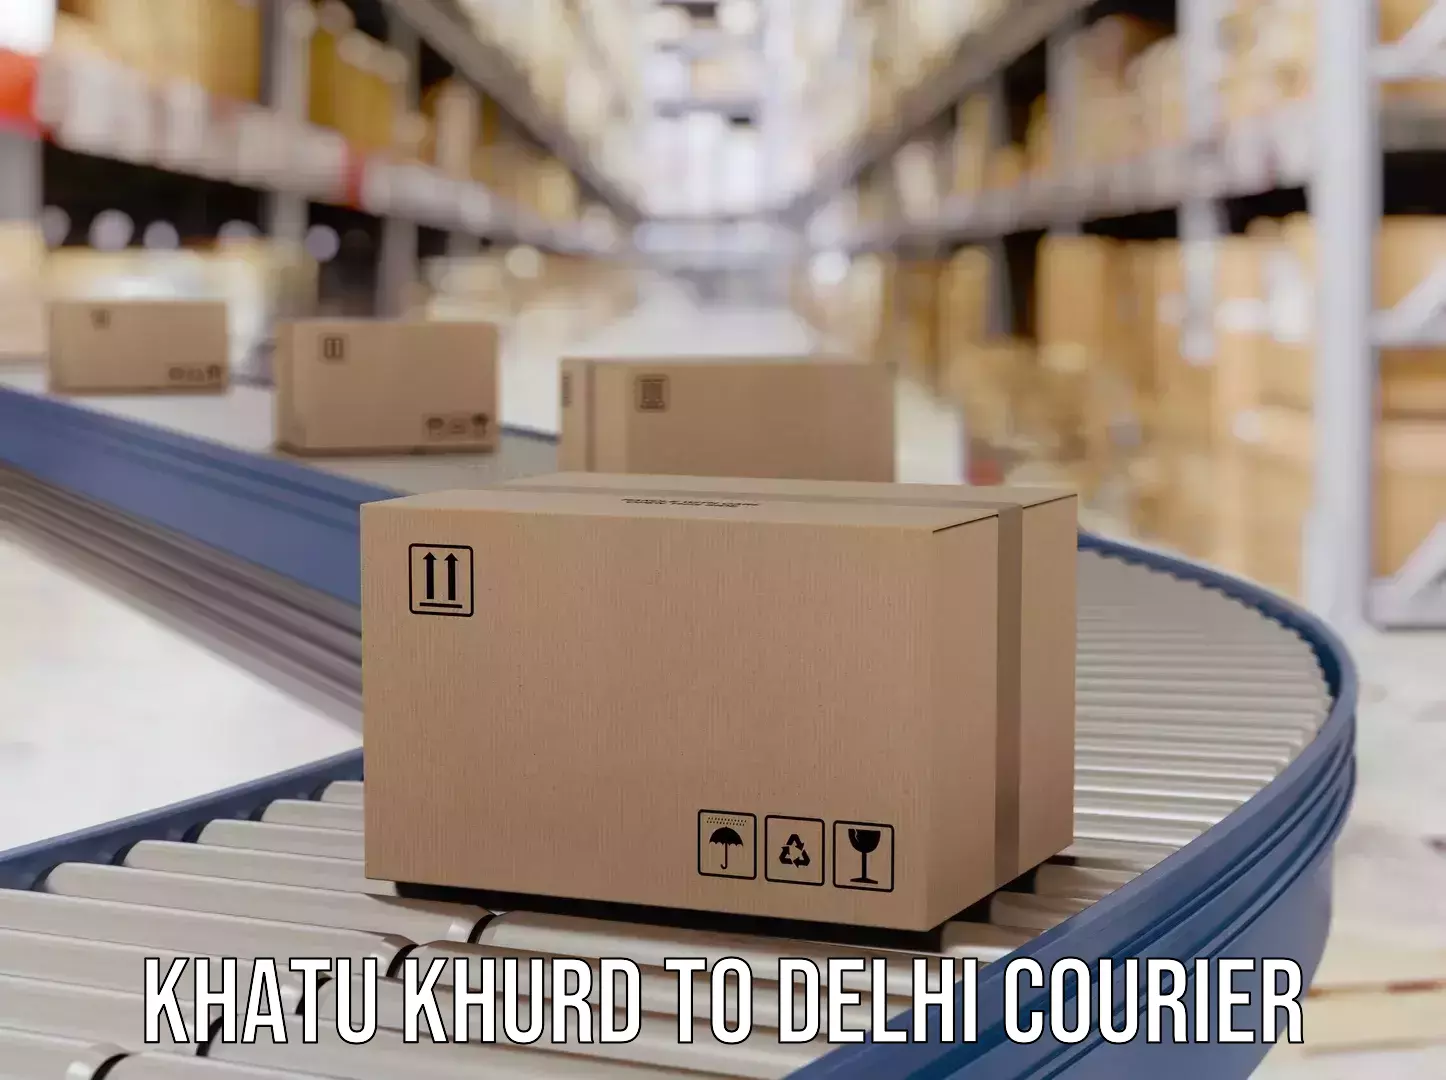 Global courier networks Khatu Khurd to University of Delhi